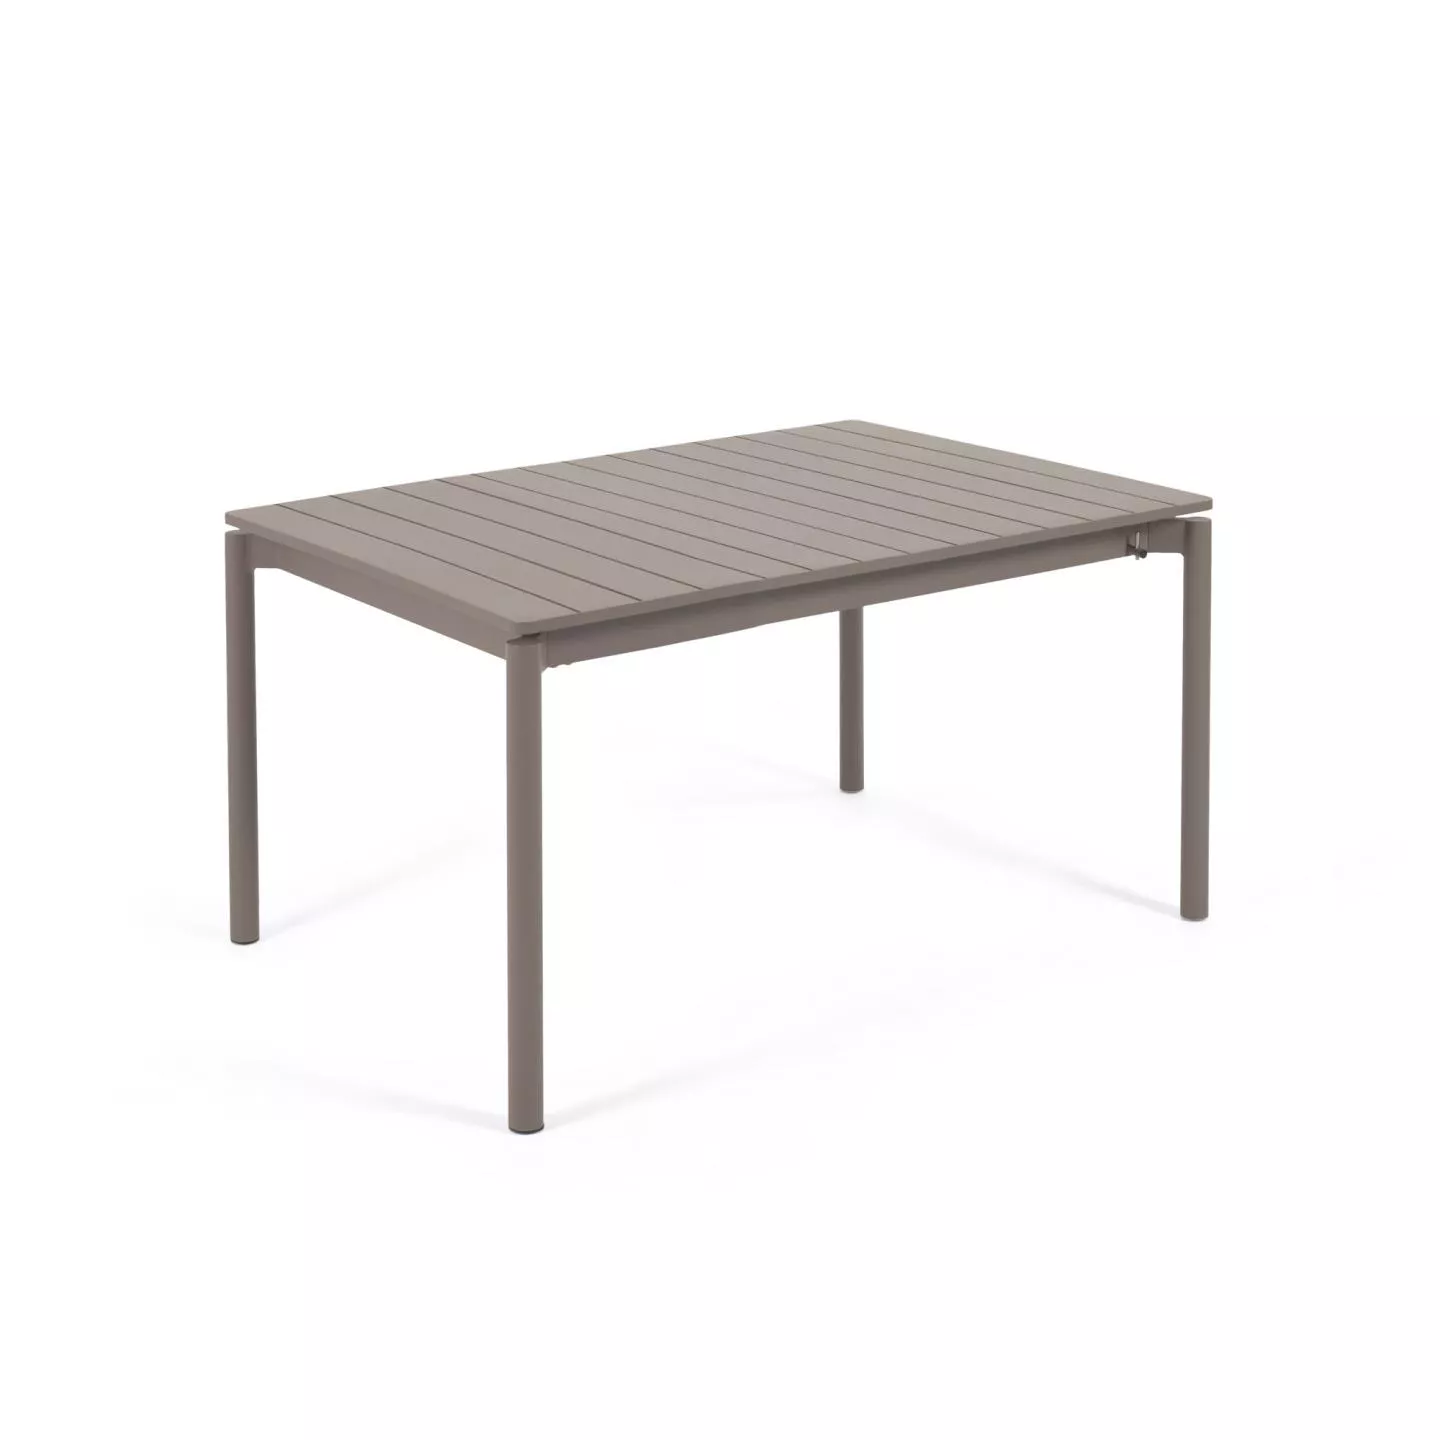 Раздвижной стол La Forma Zaltana коричневый 140 x 90 см